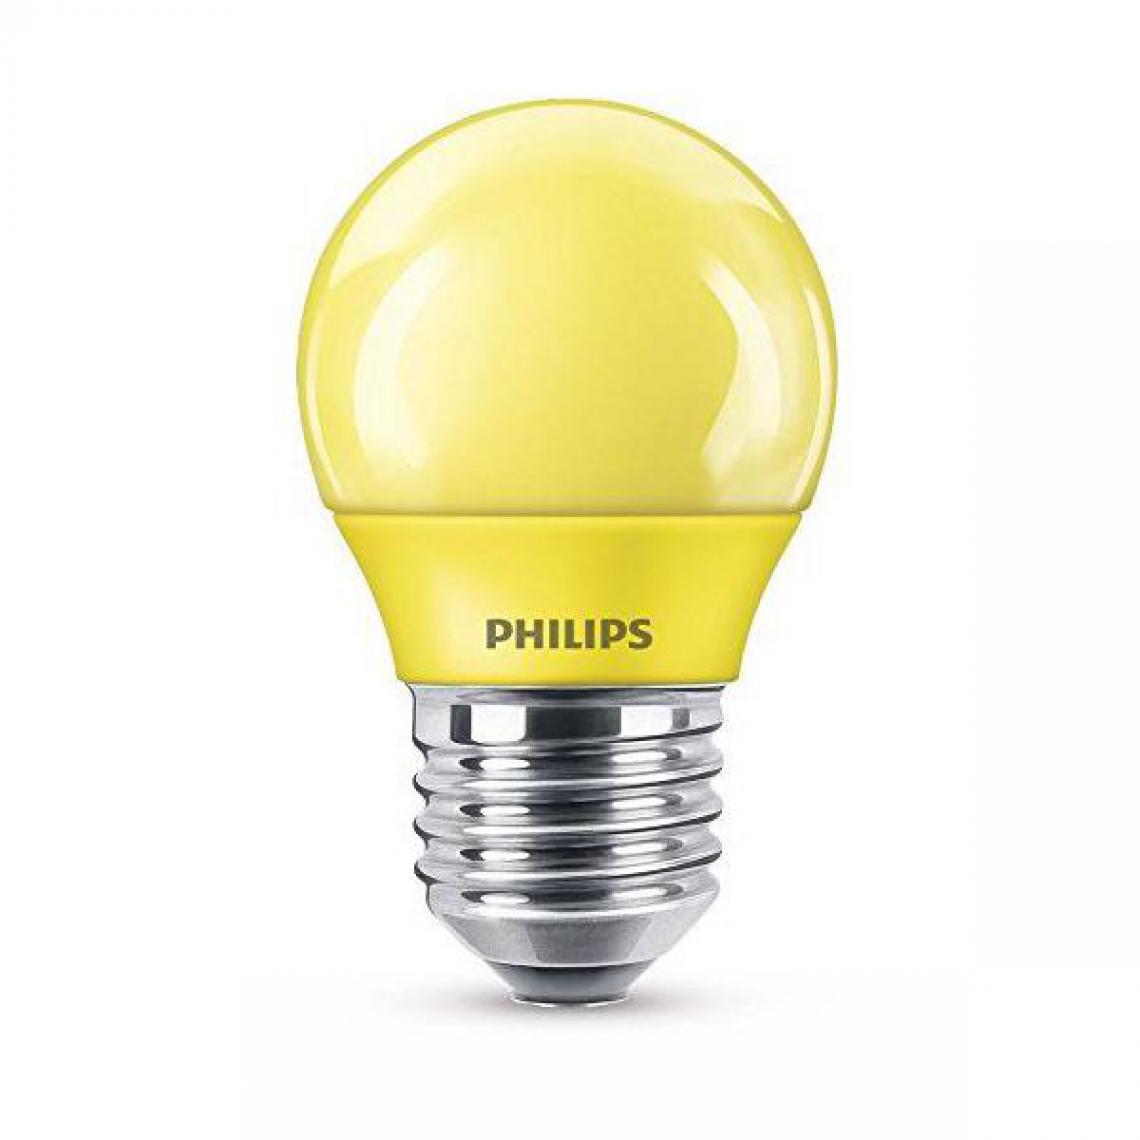 Philips - Ampoule LED E27 Philips Lighting 929001394001 en forme de goutte 3.1 W = 25 W jaune (Ø x L) 45 mm x 78 mm EEC: classe A - Ampoules LED